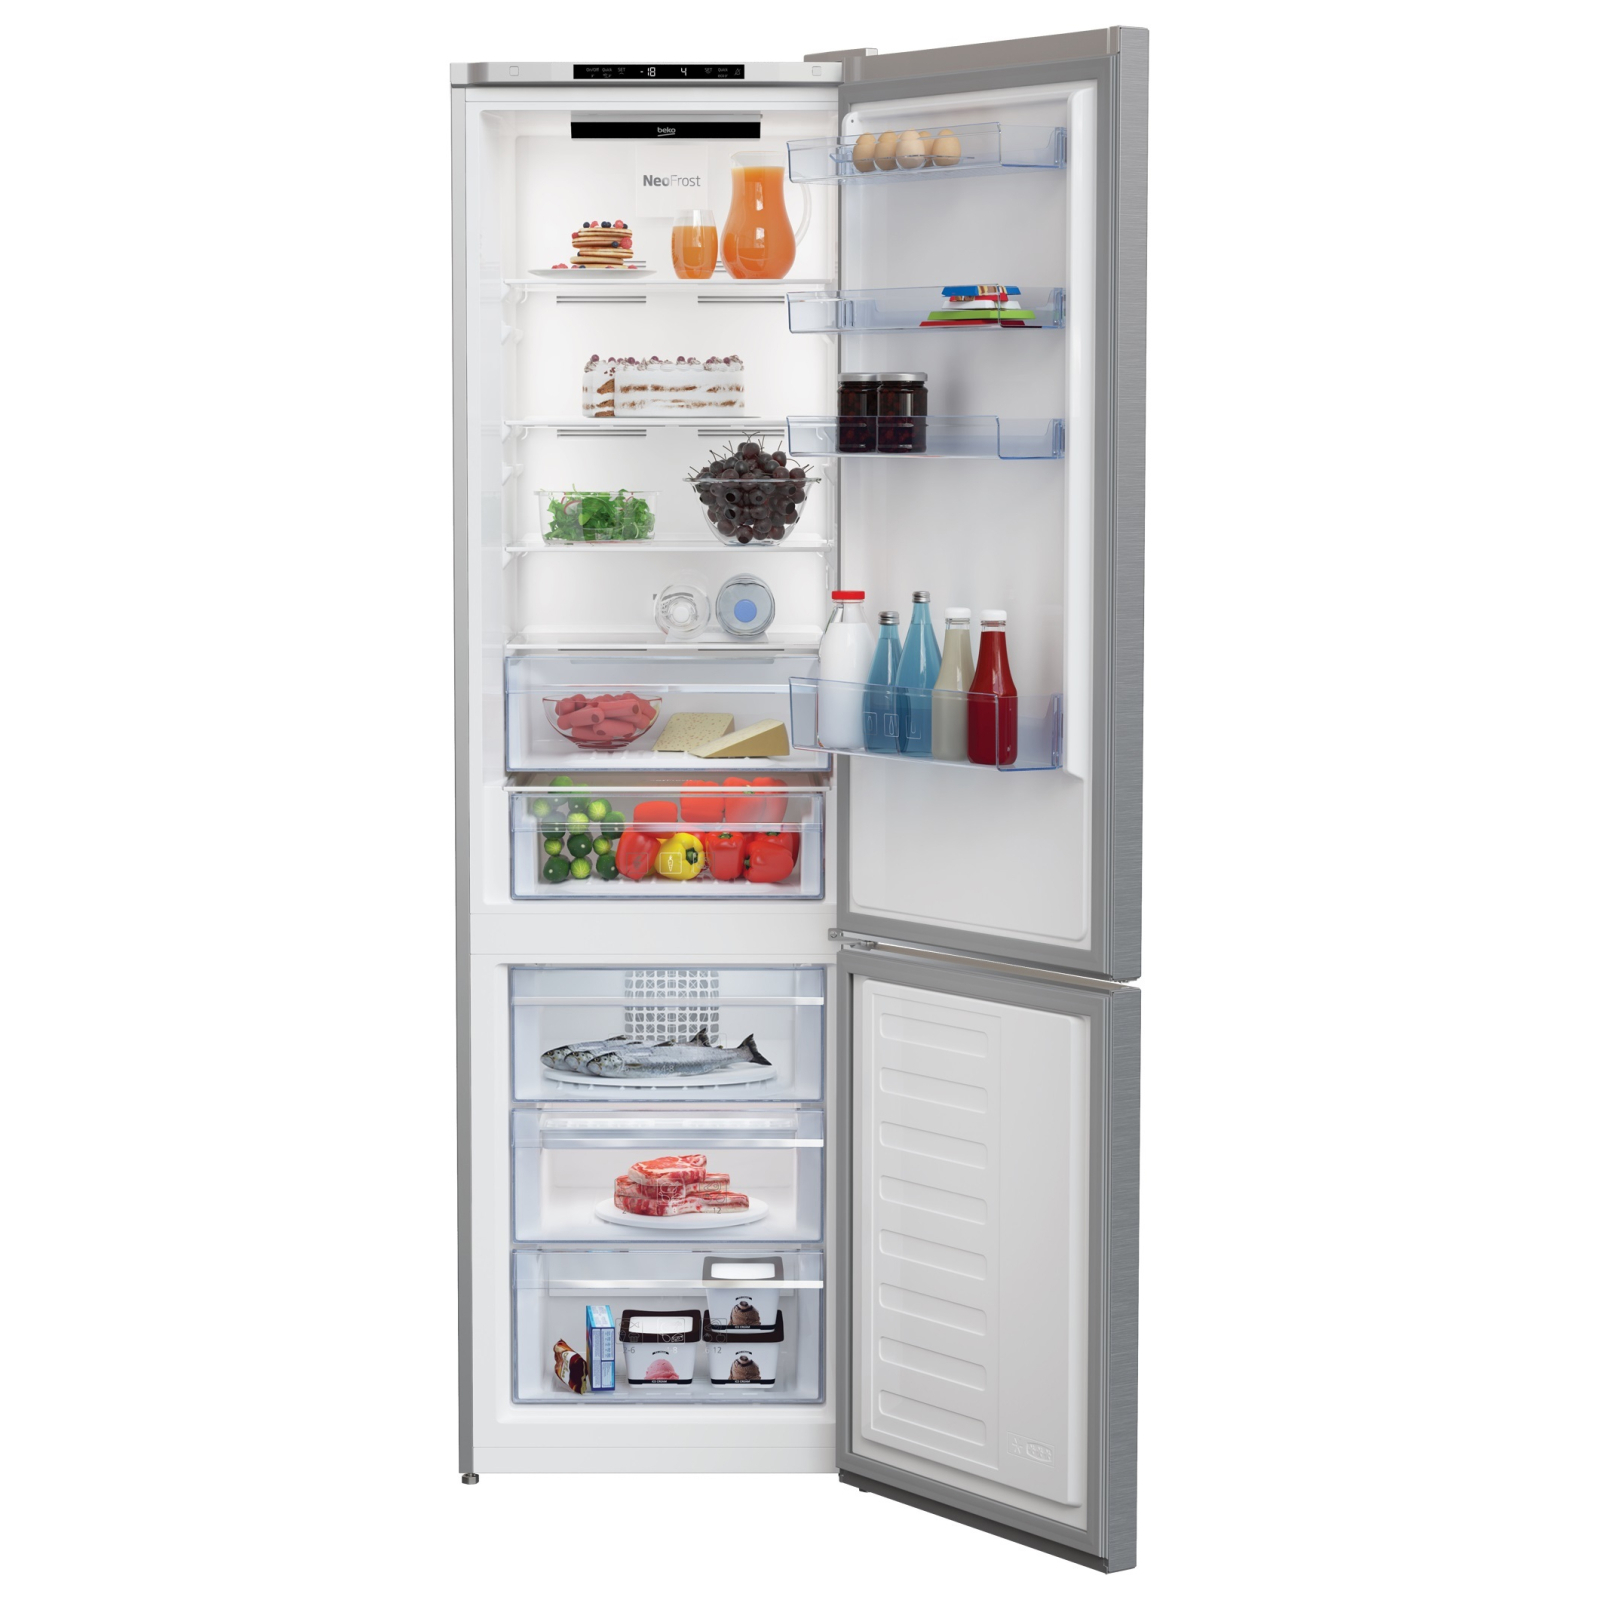 Холодильник Beko RCNA406I30XB зображення 3